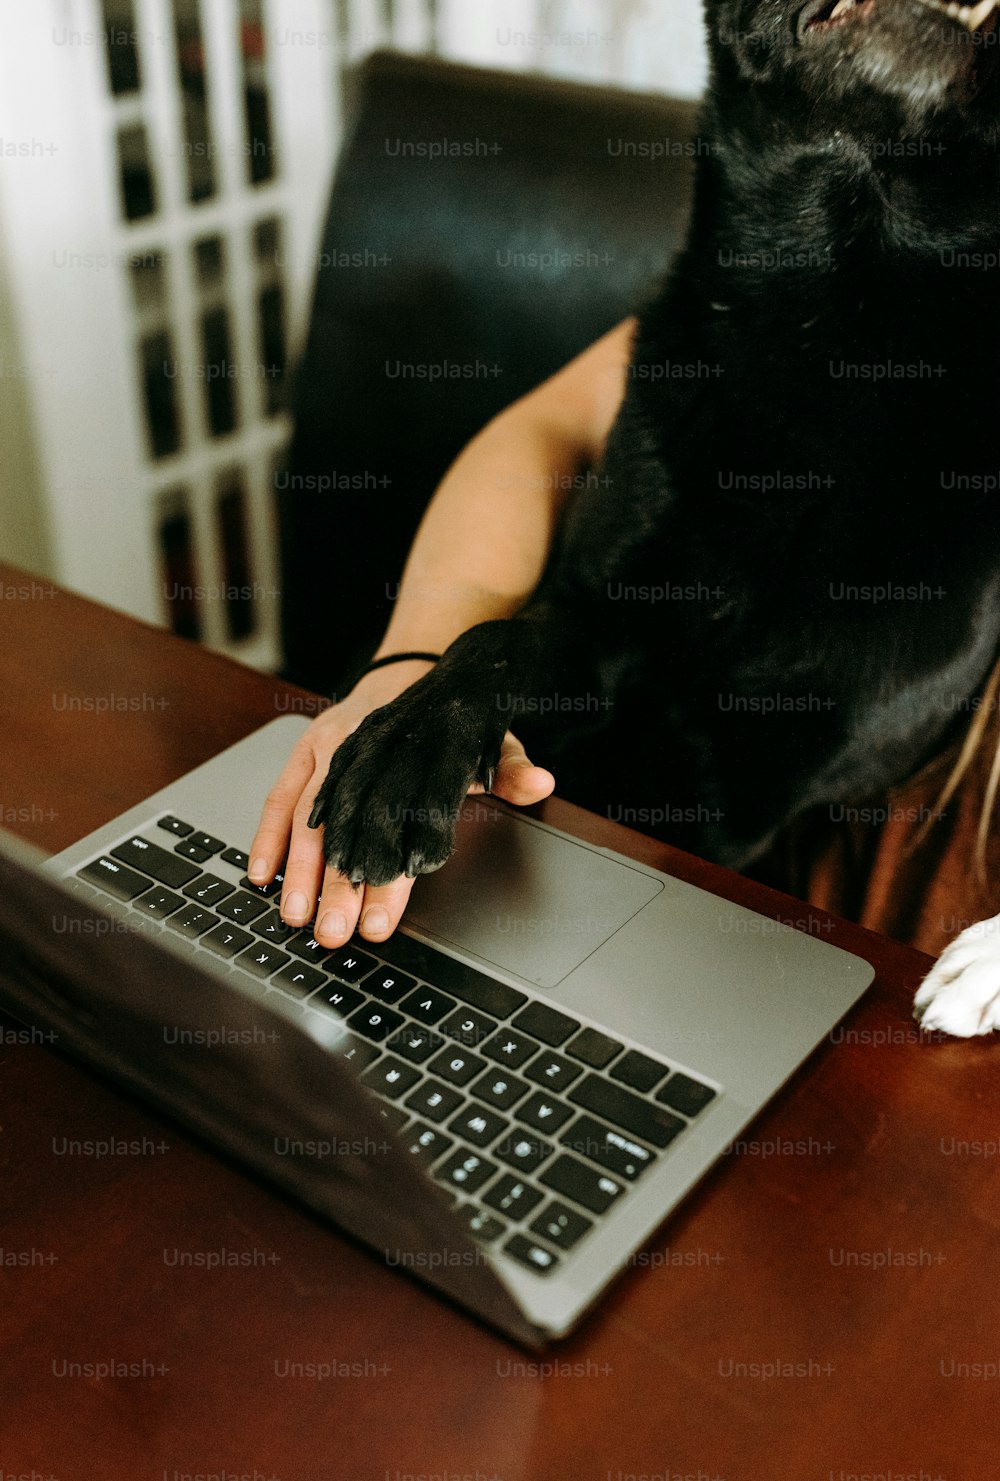 une personne avec un chien sur ses genoux utilisant un ordinateur portable